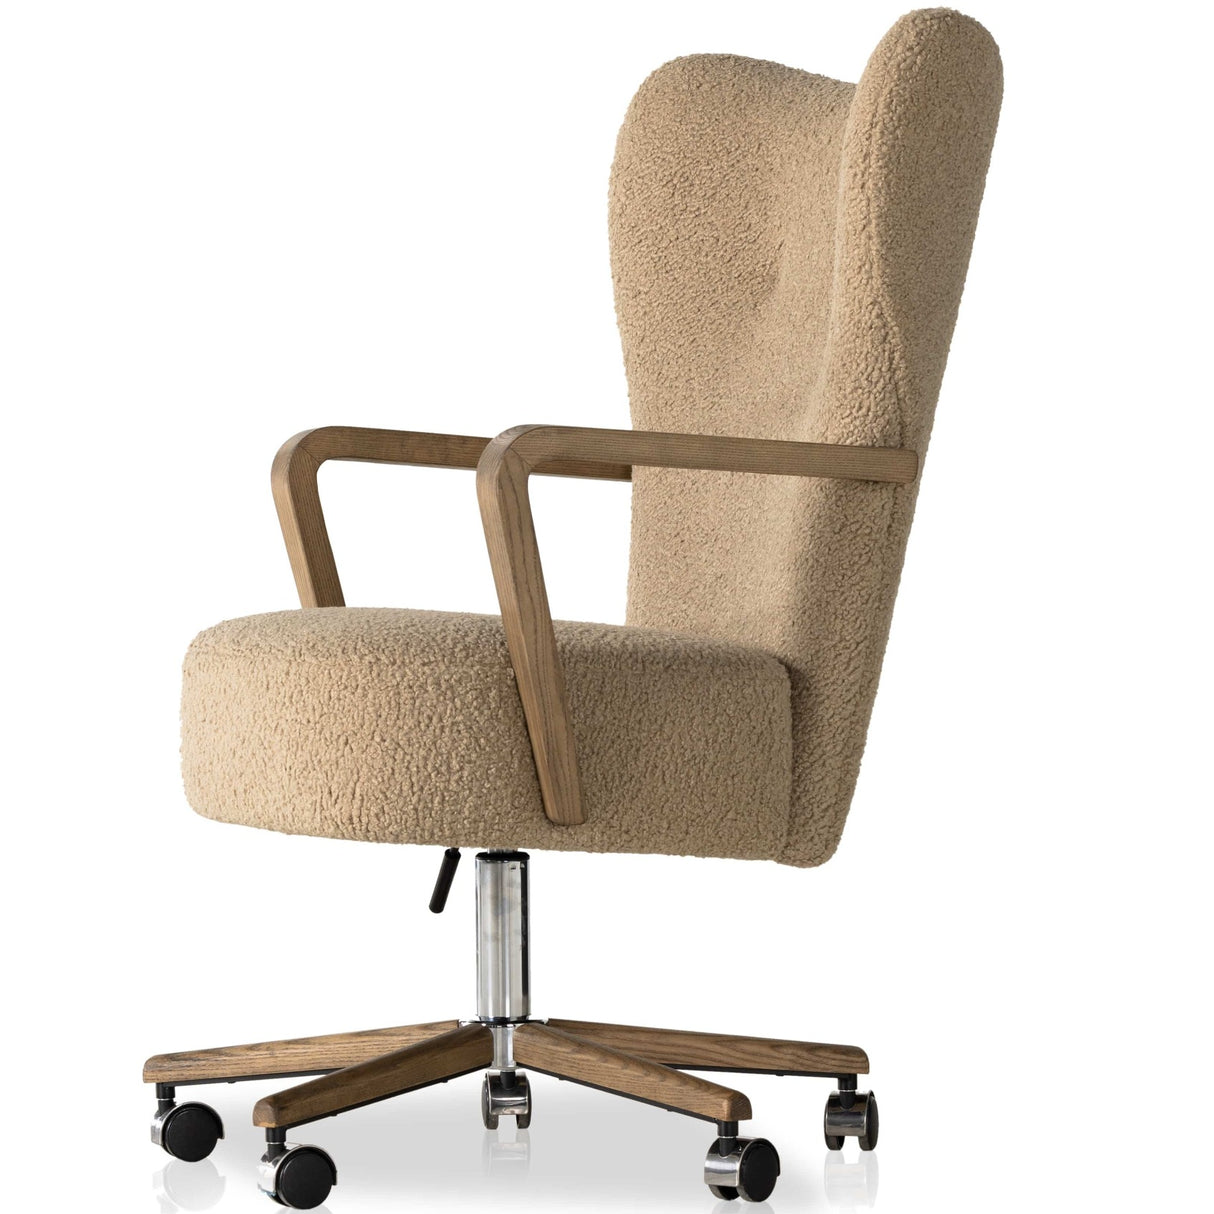 Four Hands Melrose Desk Chair Upholstered Swivel Chair